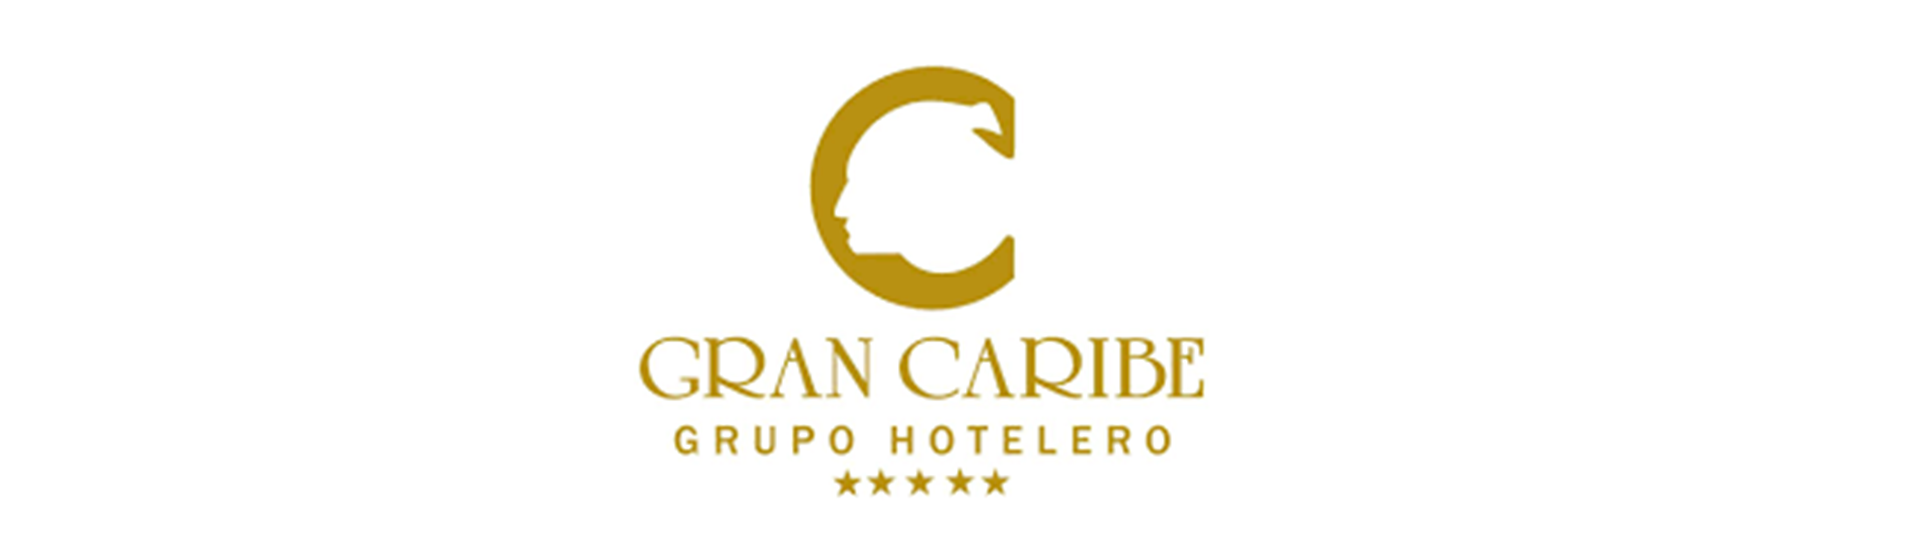 Logotipo Hoteles Gran Caribe Cuba